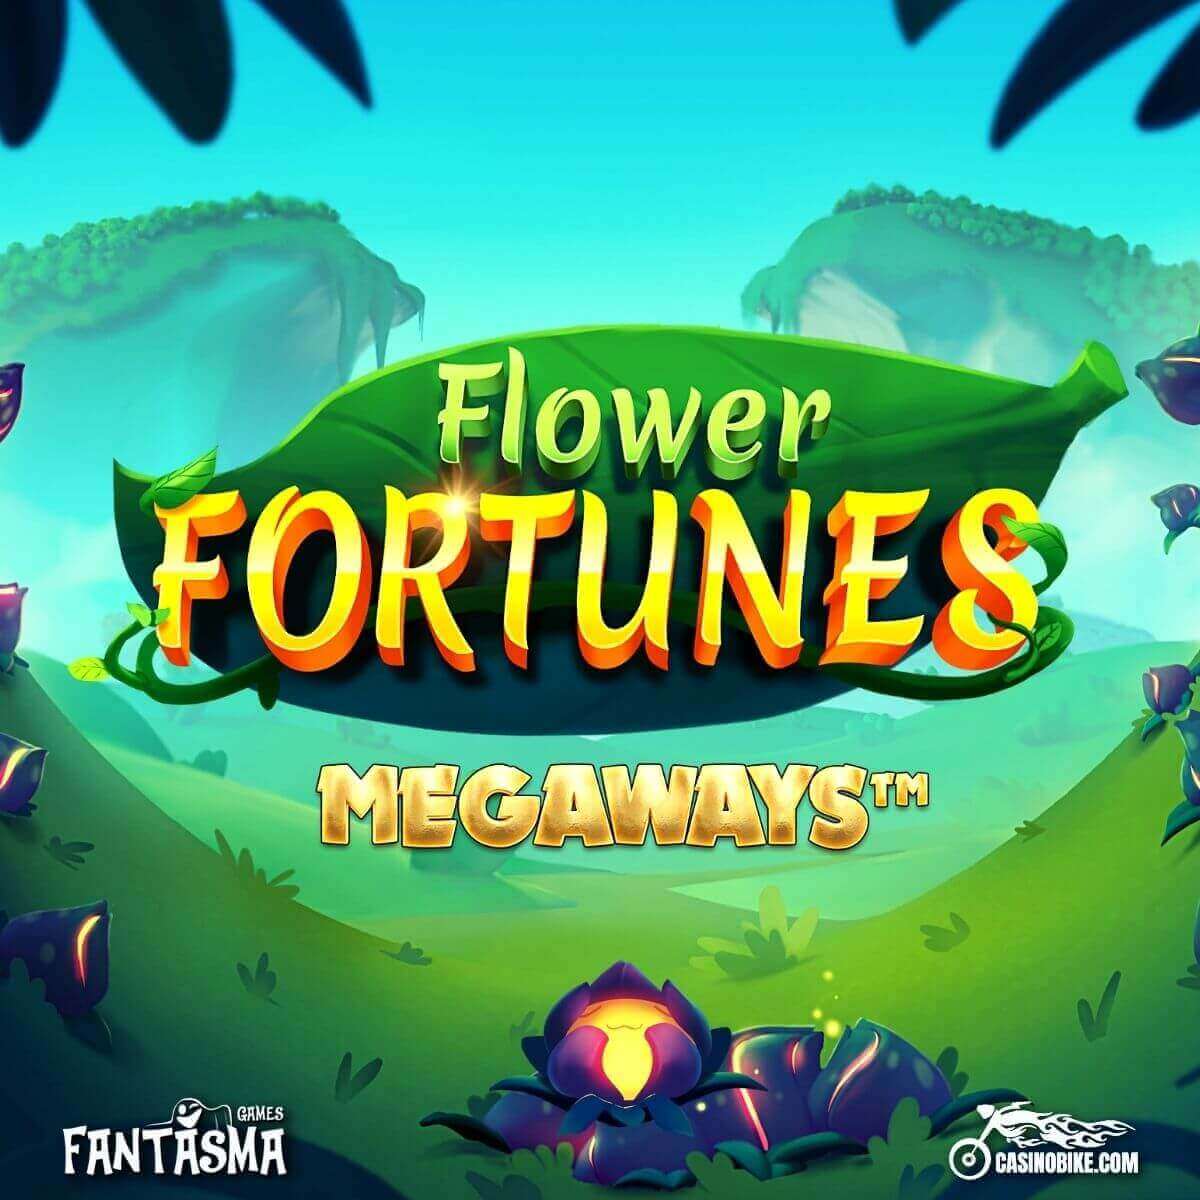 Flower Fortunes MegaWays Slot by Fantasma Games